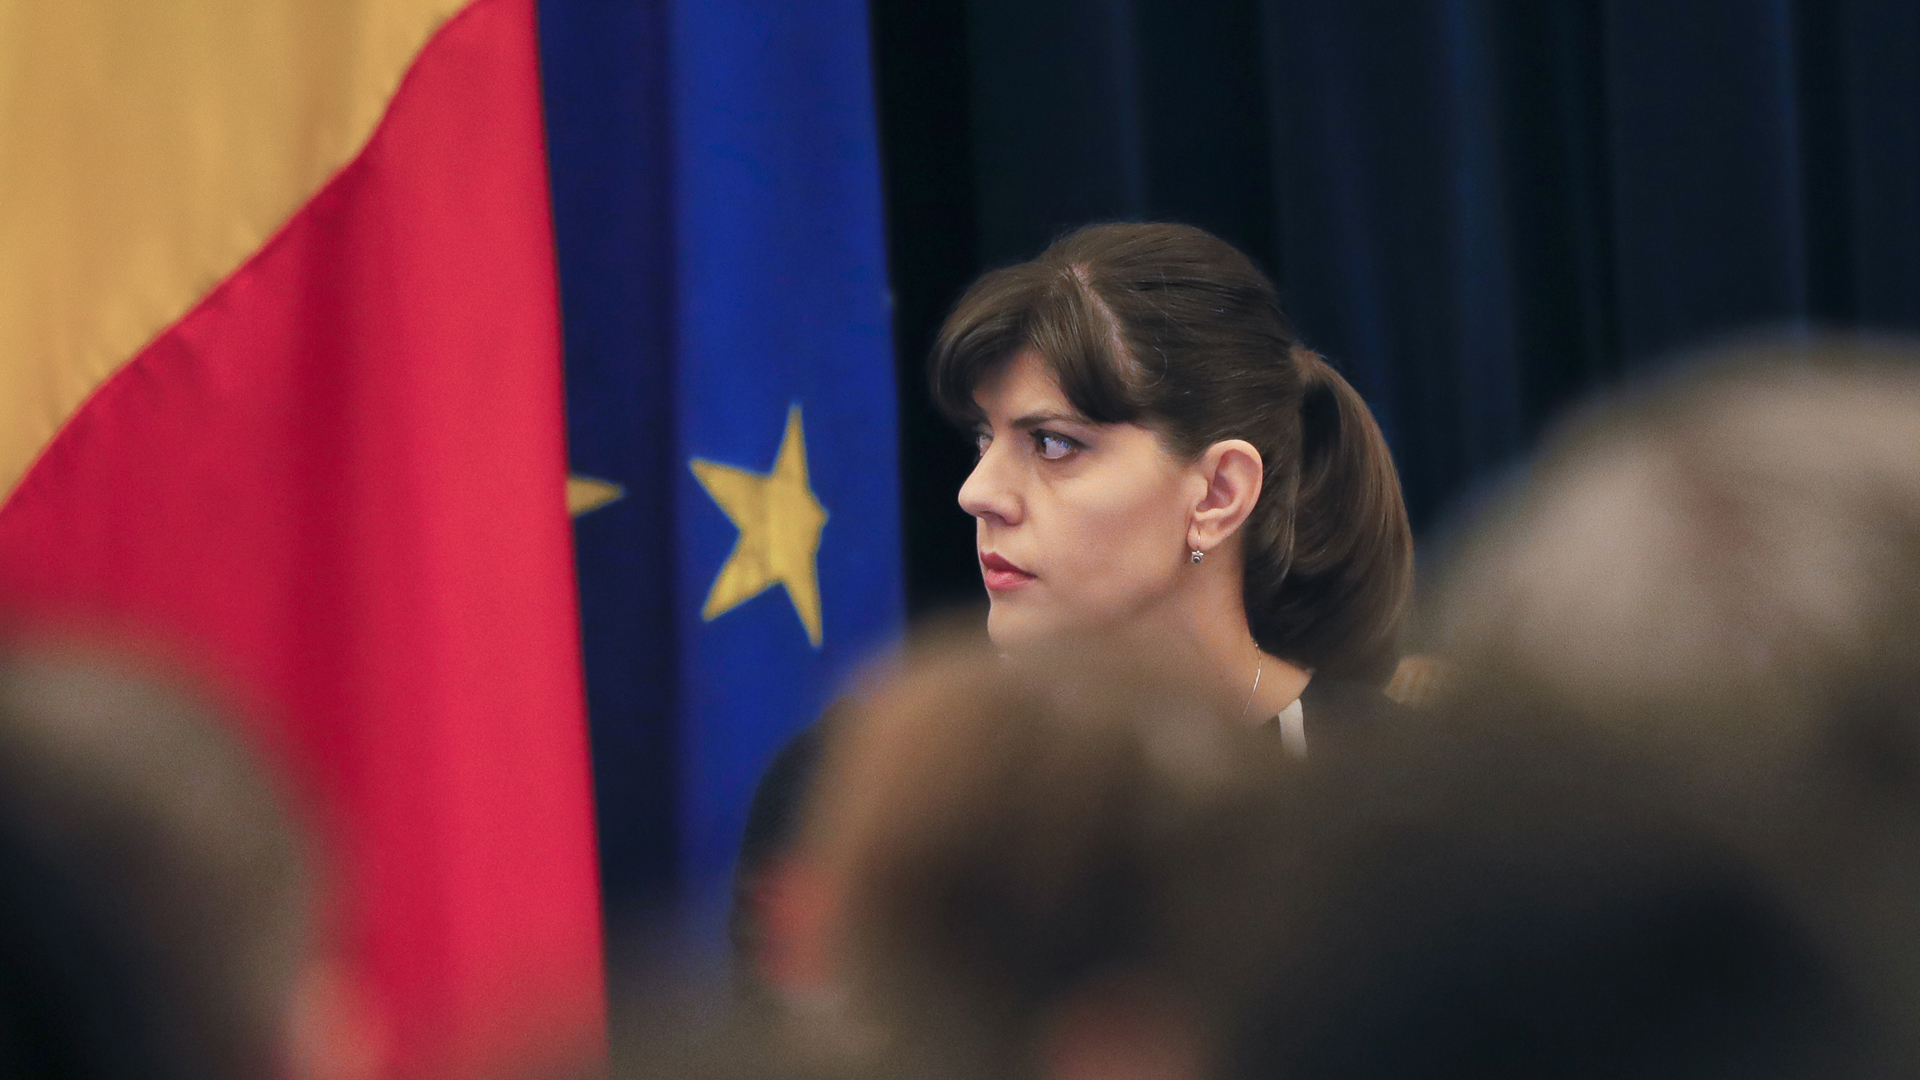 EU-Generalstaatsanwältin Laura Kövesi vor einer EU-Flagge. | picture alliance/AP Photo